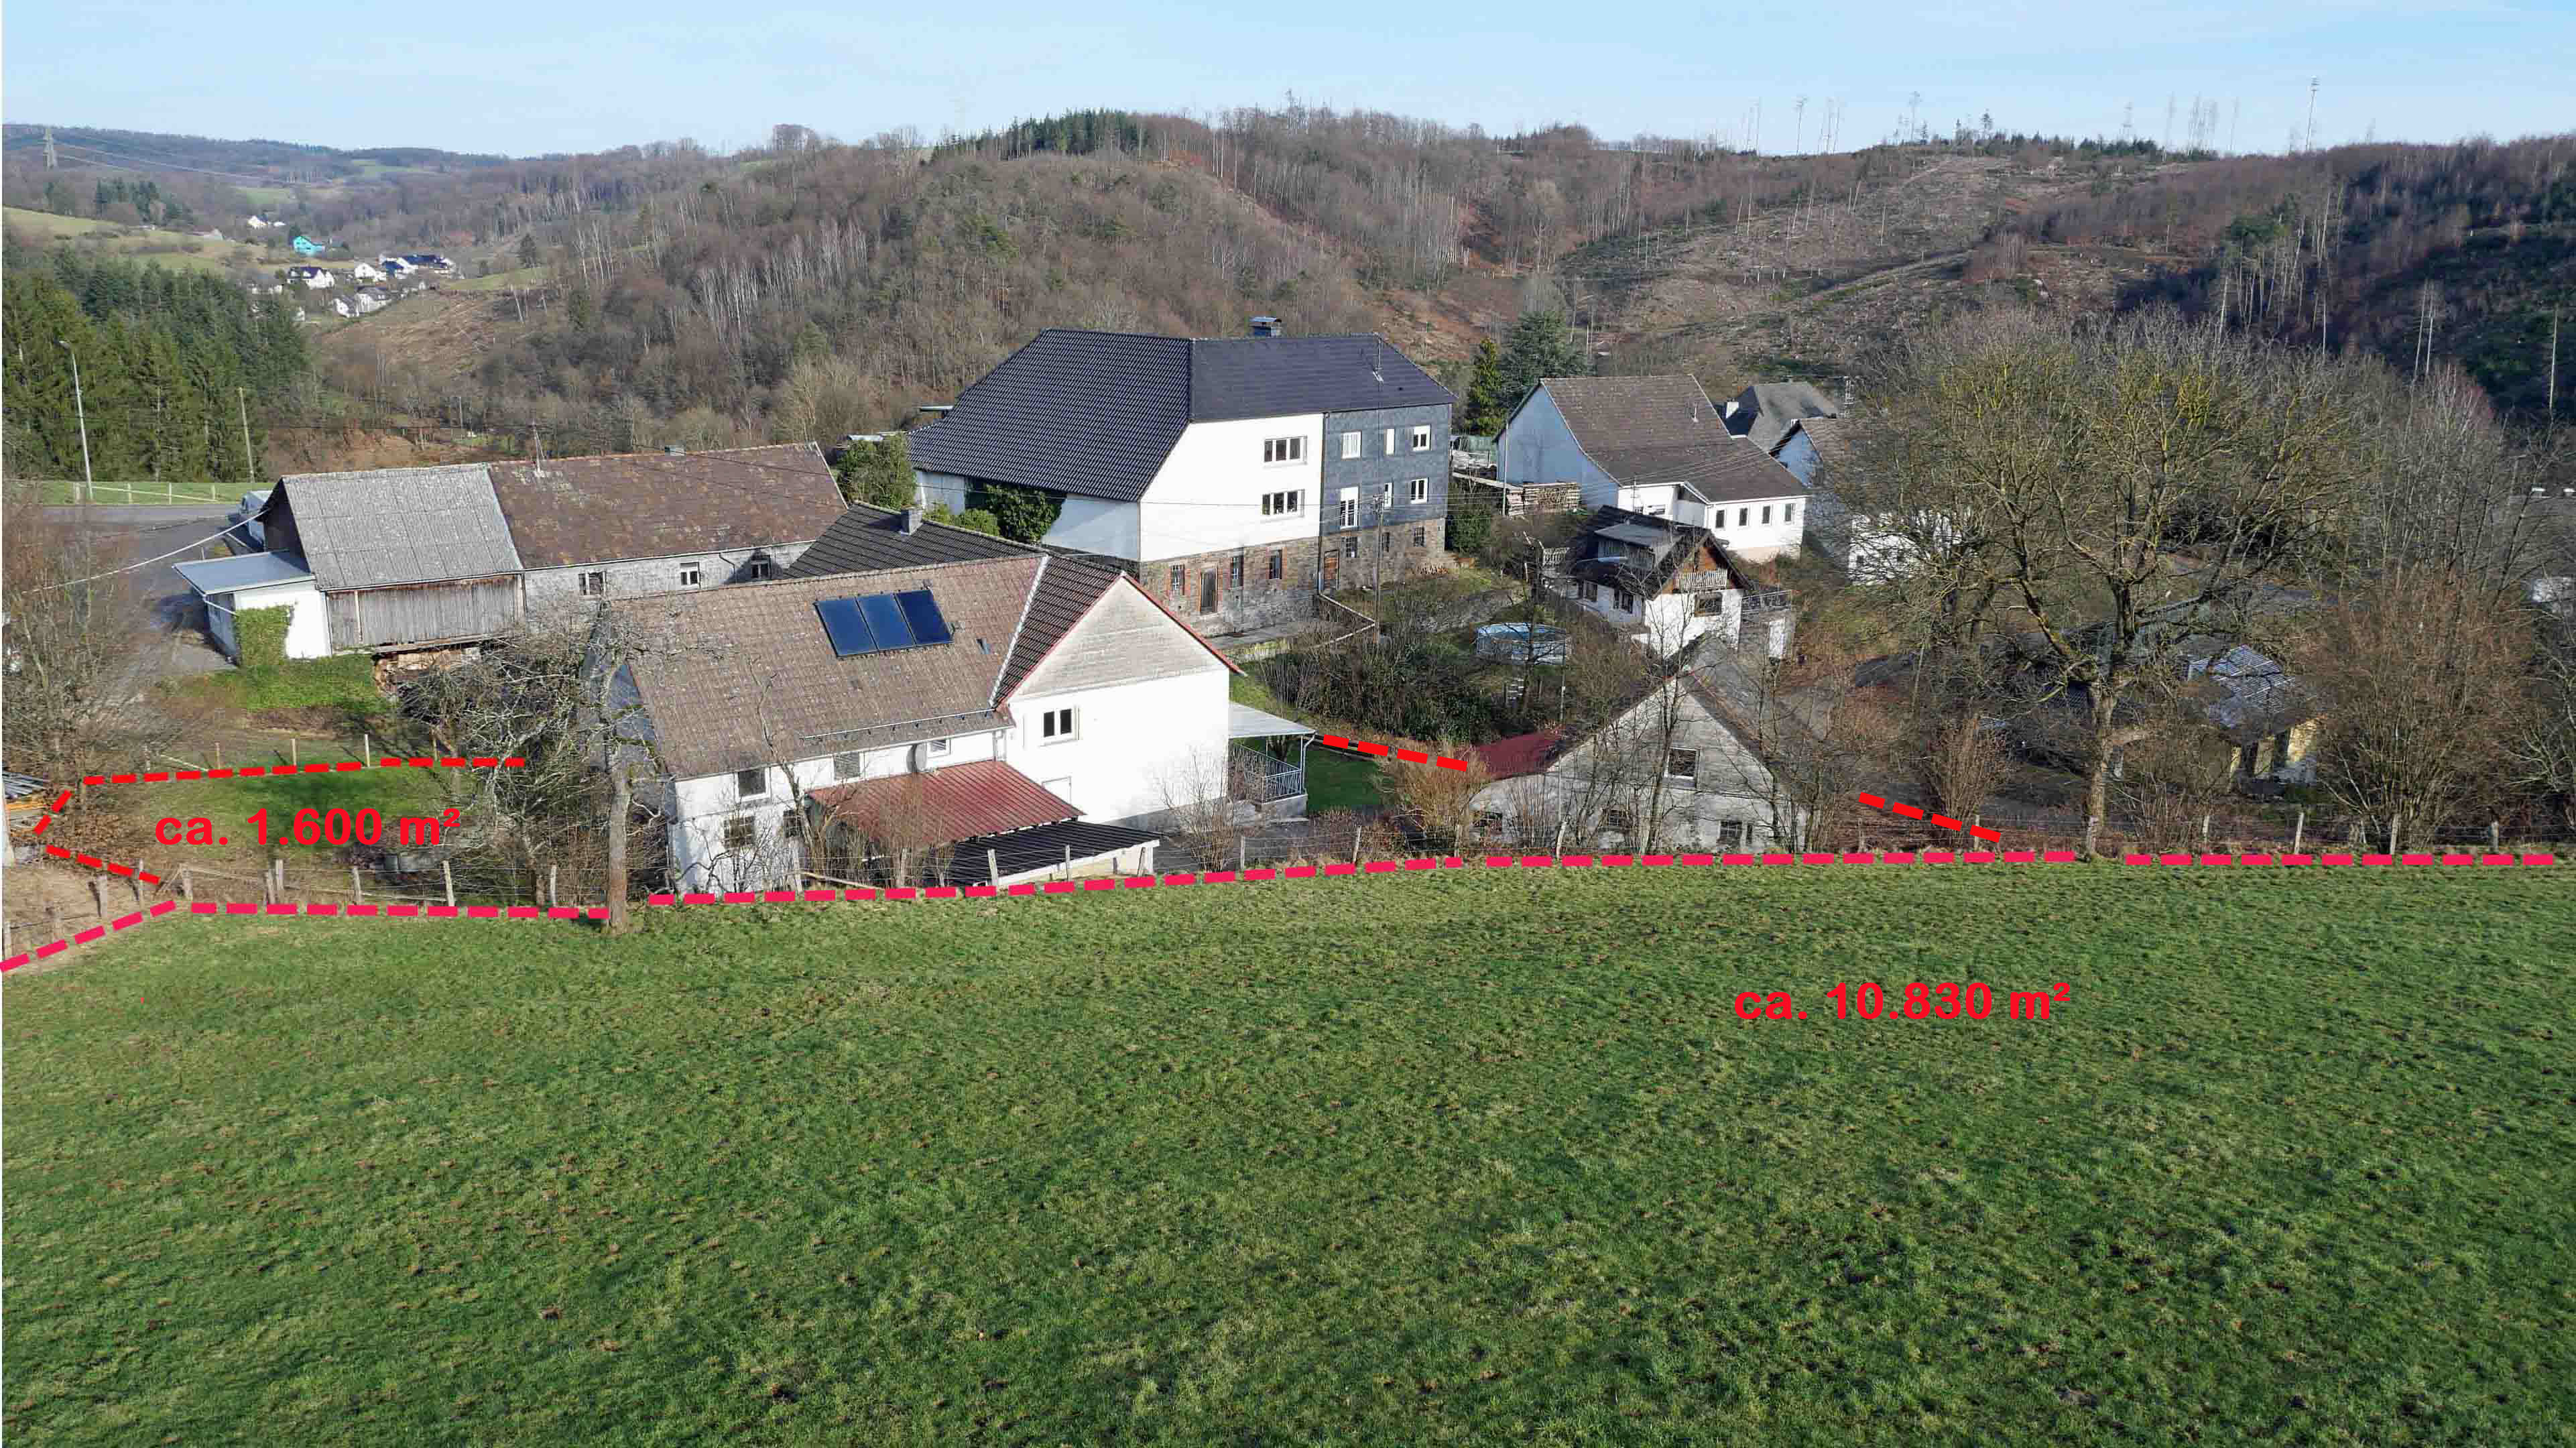 Morsbach-Ortseifen: Bauernhaus mit ELW, 2 Garagen, 2 Carports, Stall und 1,1 ha Weide, ruhige Naturlage am Ortsrand eines kleinen Dorfes